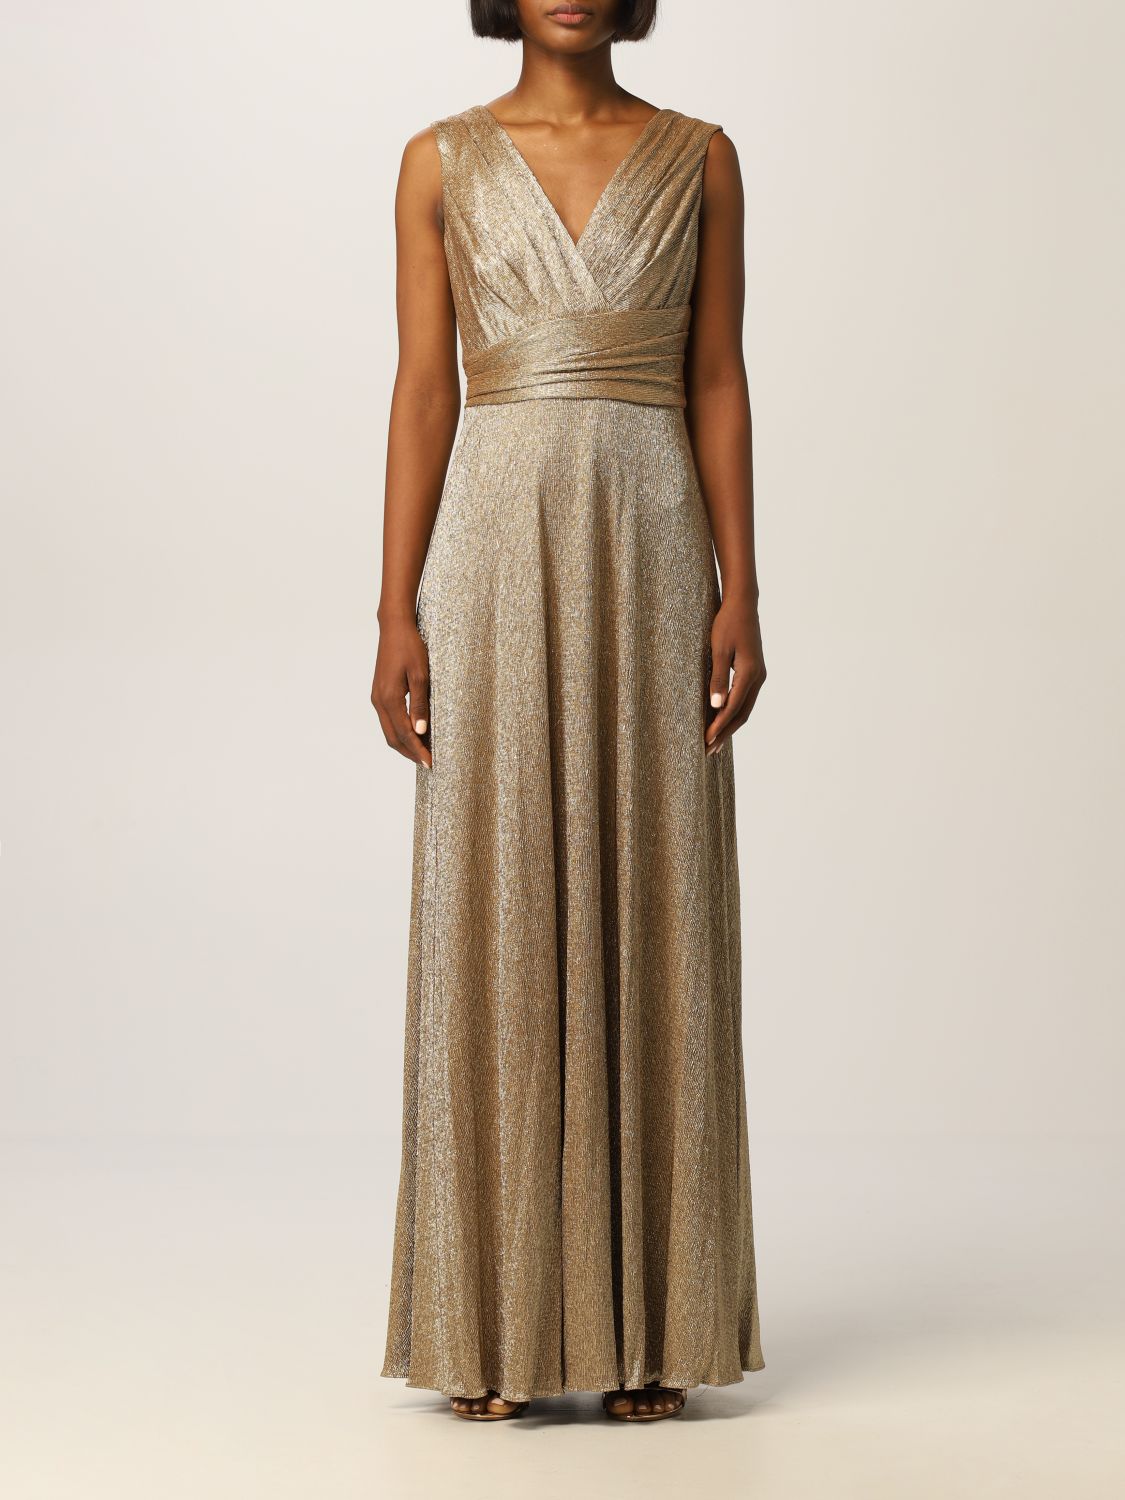 LAUREN RALPH LAUREN: dress for woman - Gold | Lauren Ralph Lauren dress ...